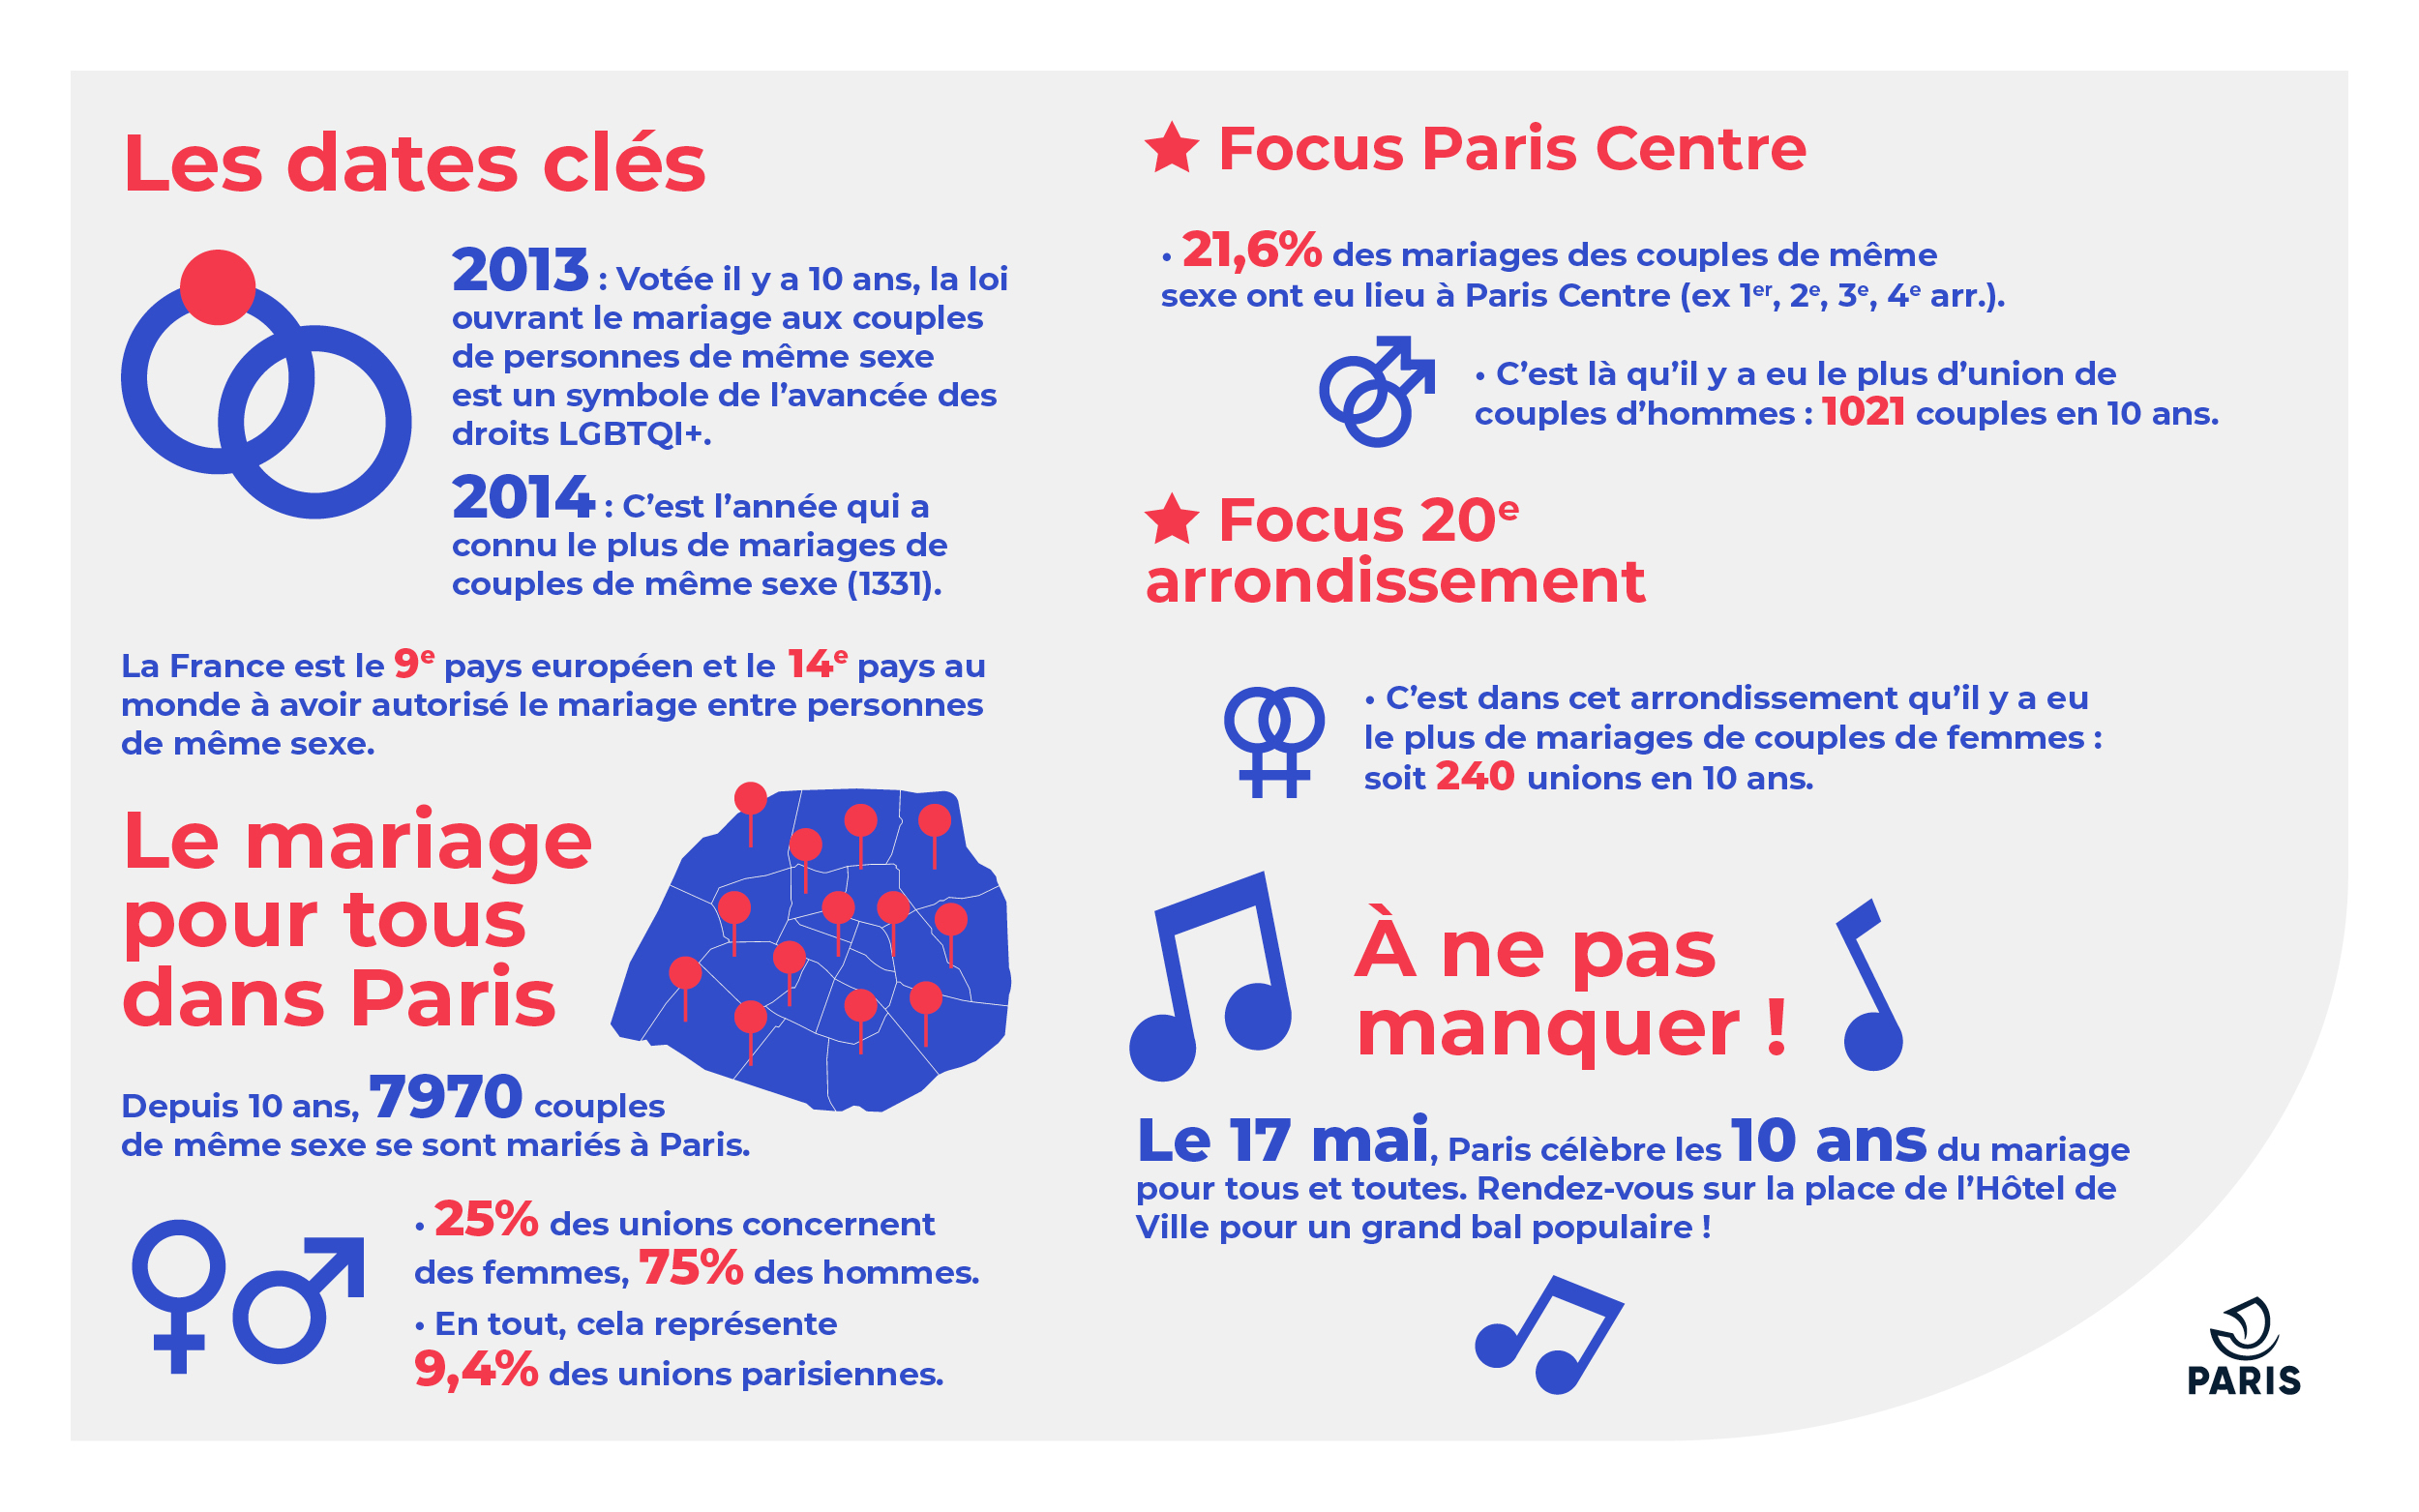 Bilan parisien des mariages de couples de même sexe depuis l’application de la loi du 19 mai 2013